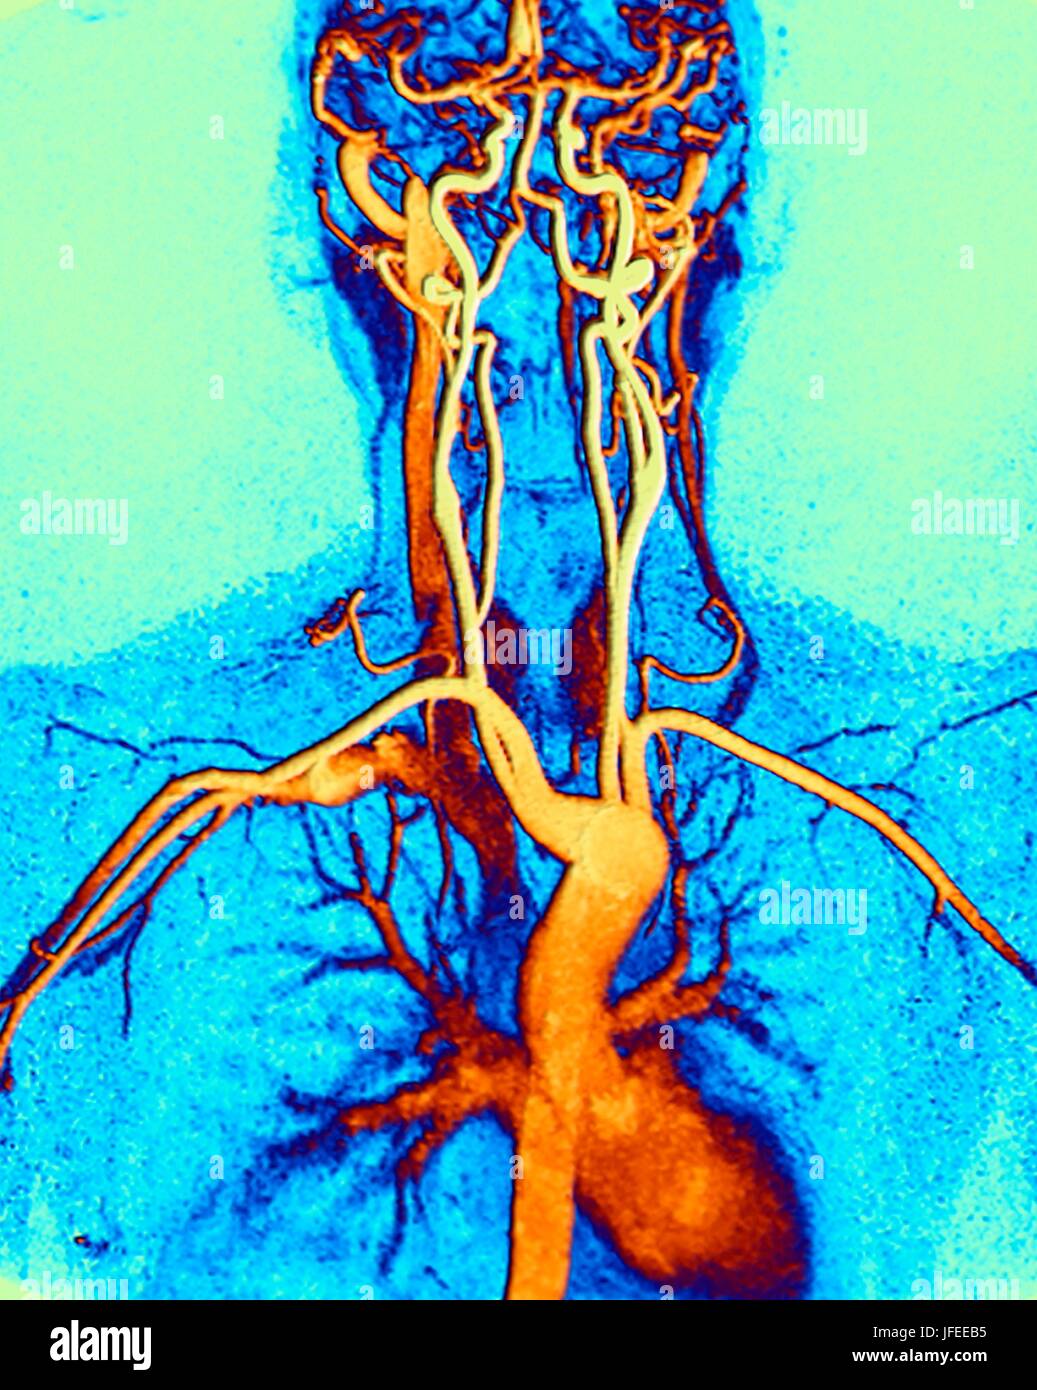 El pecho, el cuello y la cabeza de las arterias. Color angiografía por resonancia magnética (ARM) captura normal de un sistema de la carótida de una hembra de 45 años de edad. Abajo en el centro es el arco de la aorta, la cual se curva sobre el corazón. Las arterias que se ramifican desde estas son: la arteria brachiocephalic (izquierda), la arteria carótida común izquierda (centro) y la arteria subclavia izquierda (derecha). La arteria brachiocephalic divide nuevamente en la carótida común derecha y la arteria subclavia derecha. La derecha y la izquierda las arterias carótidas comunes suministro el cuello y las arterias subclavia derecha e izquierda el suministro de armas. Arm es un no-invasivo Foto de stock